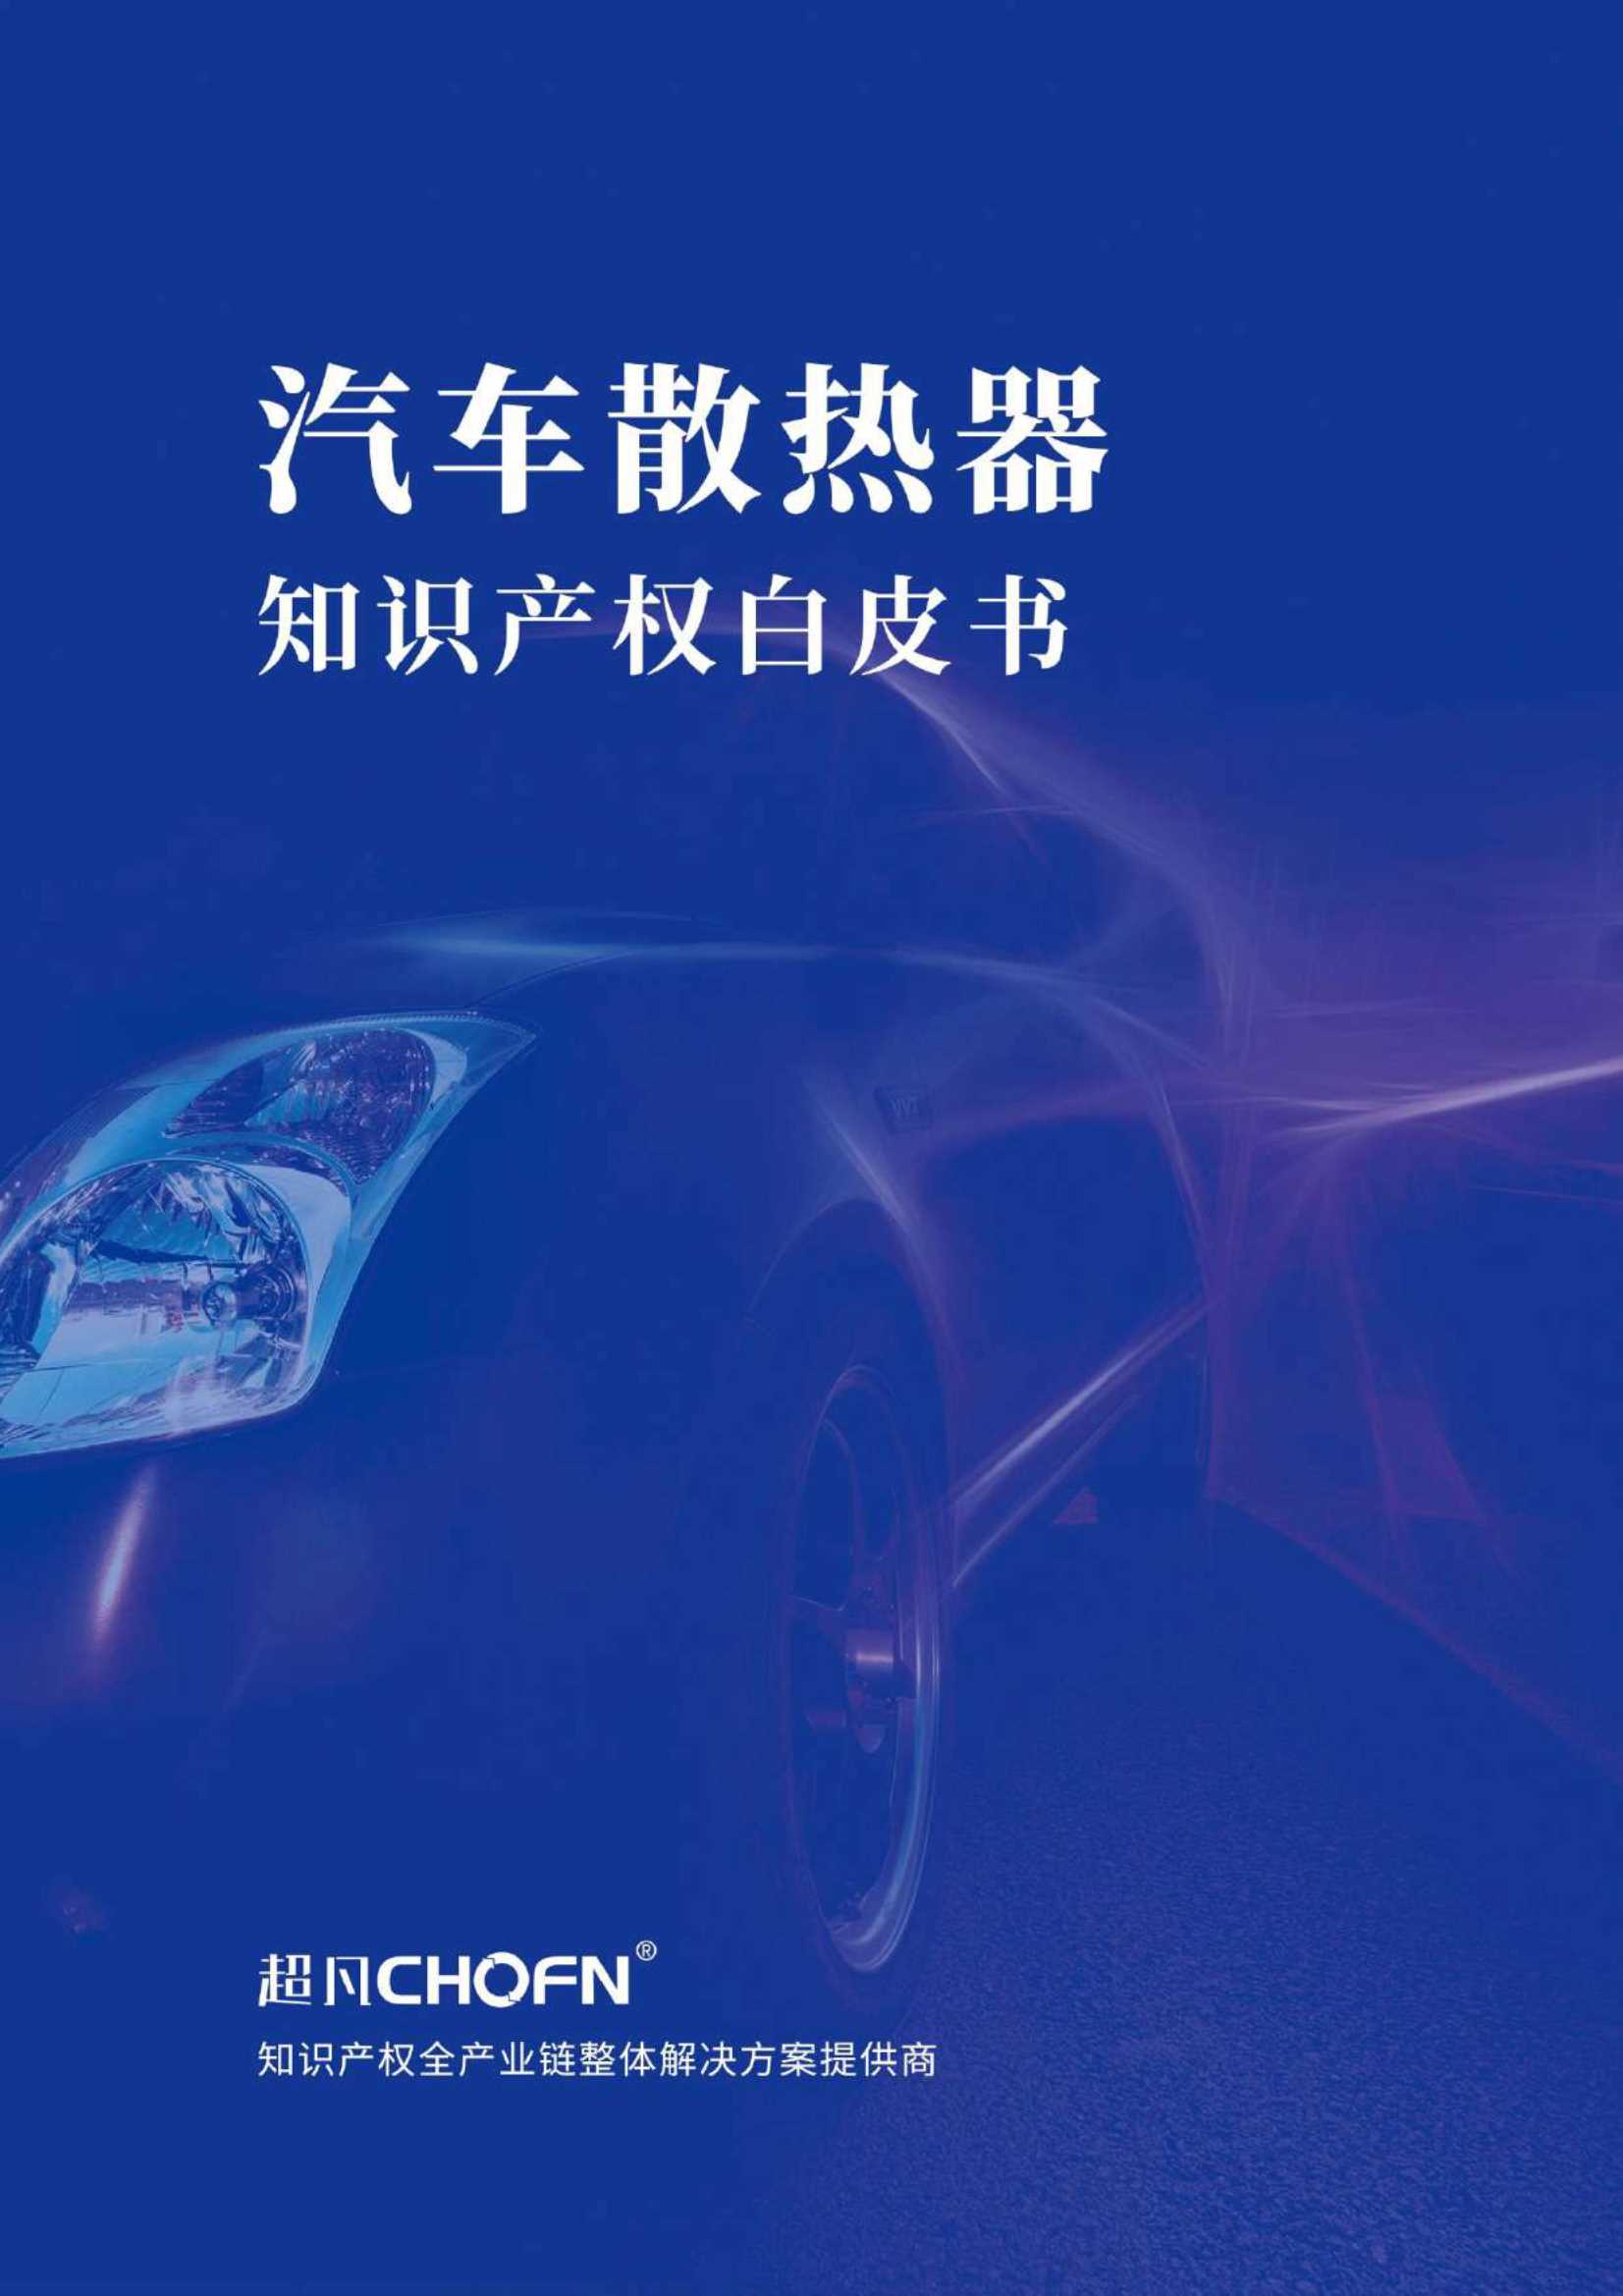 超凡-汽车散热器知识产权白皮书-2021.06-44页